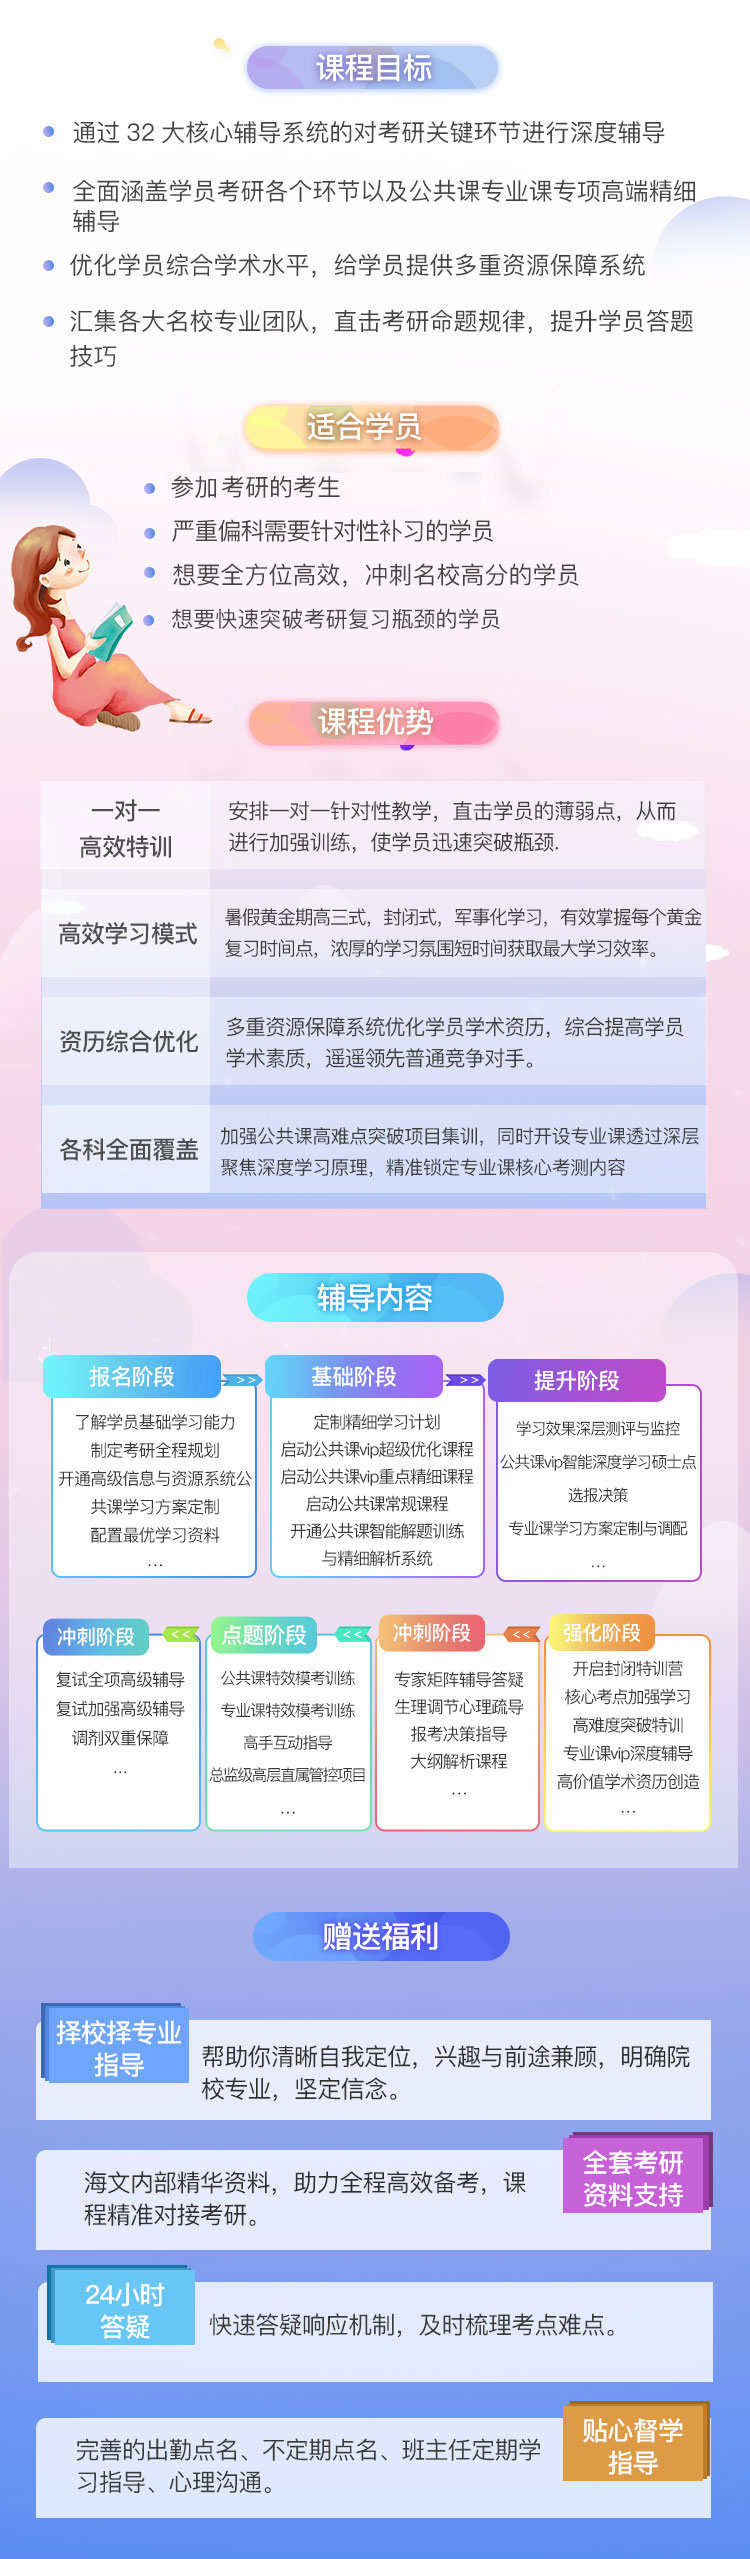 四川法学考研超级钻石卡课程（课程图示）